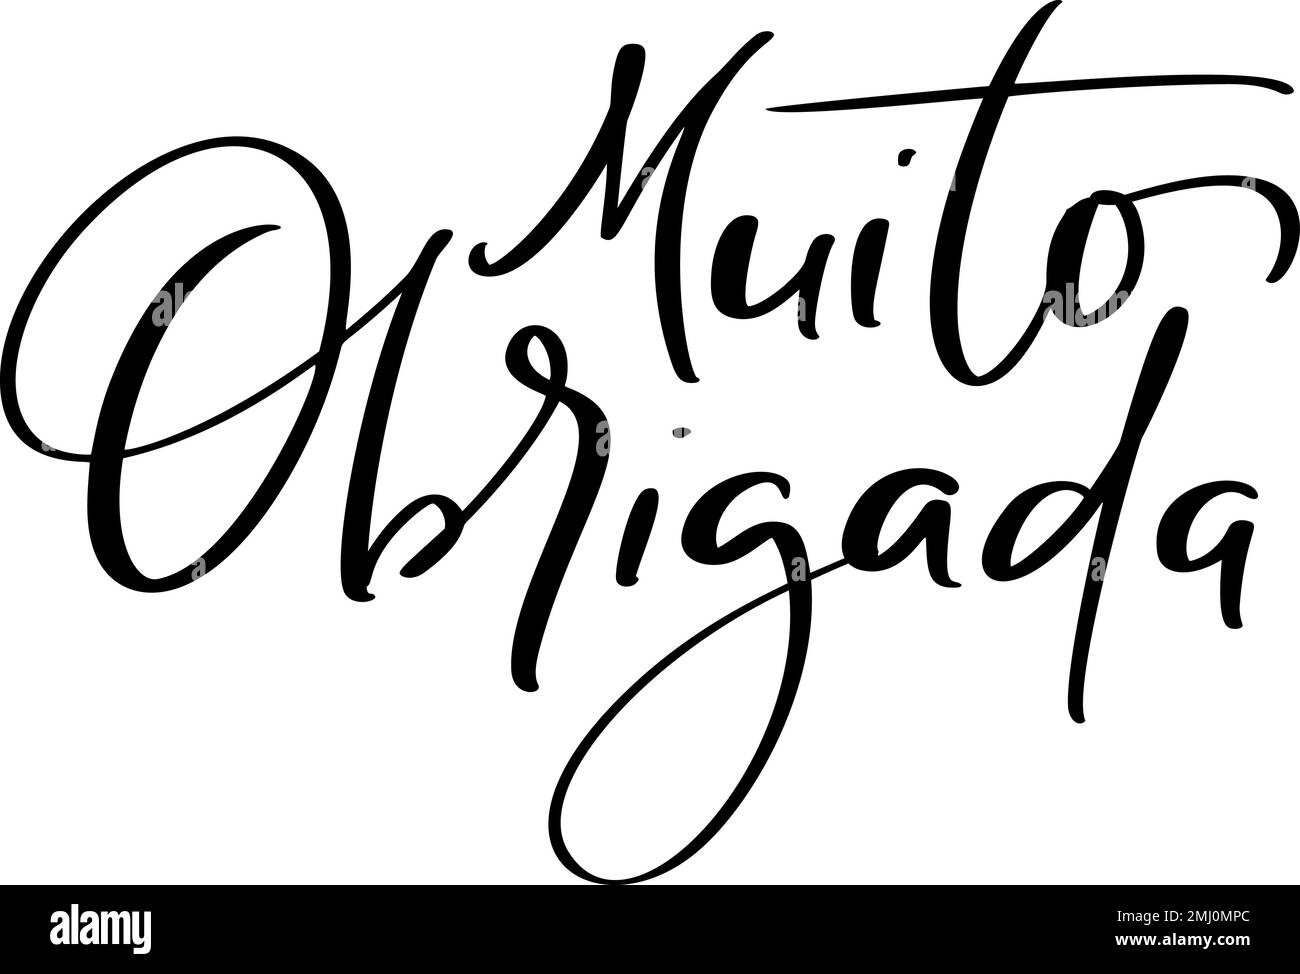 Muito Obrigada texte écrit à la main. Merci beaucoup en portugais. Illustration de l'encre. Calligraphie moderne à la brosse. Isolé sur blanc Illustration de Vecteur